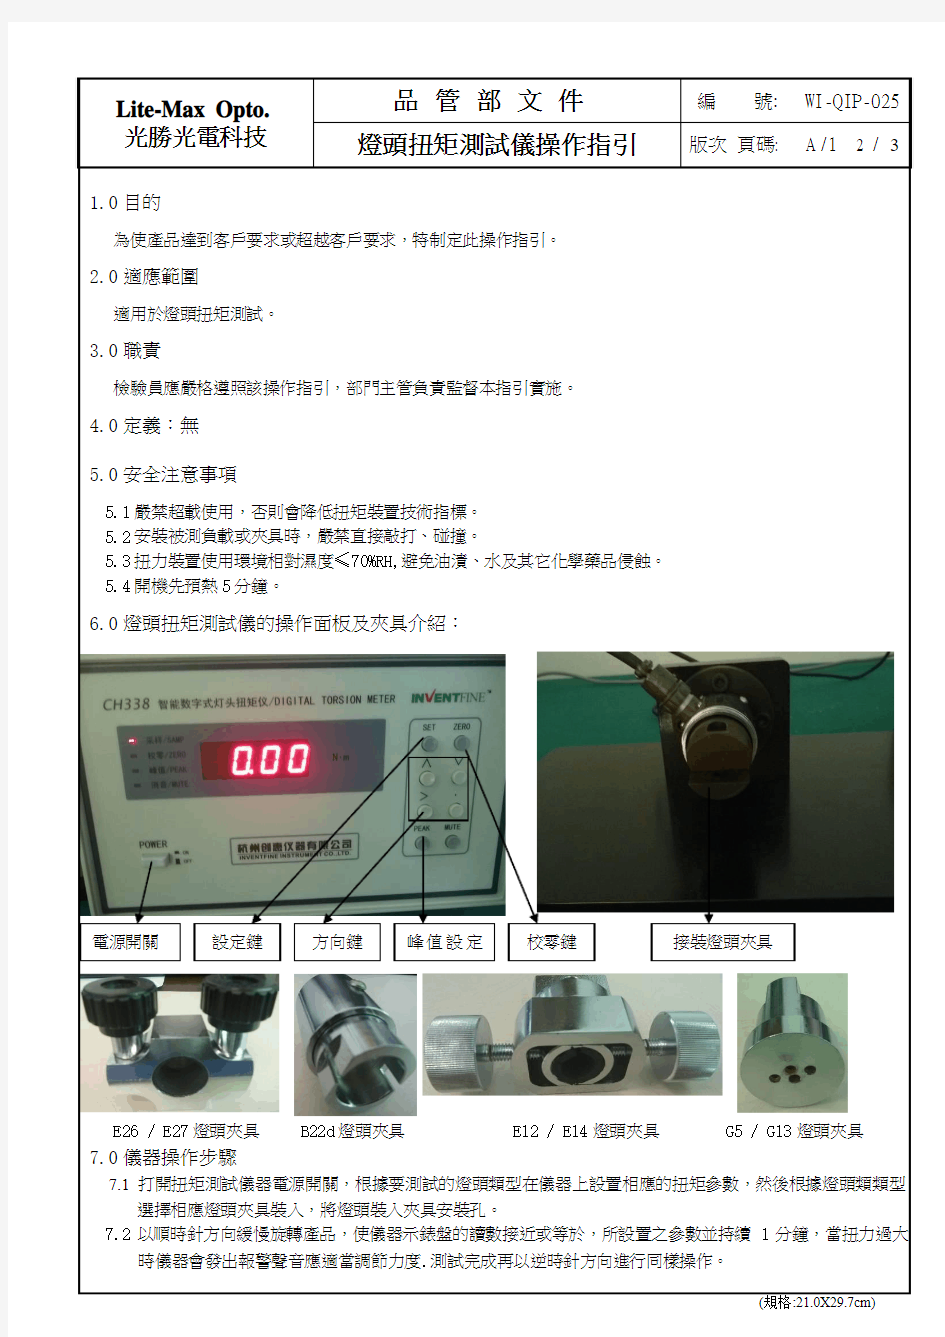 WI-QIP-025灯头扭矩测试仪SOP(格式)